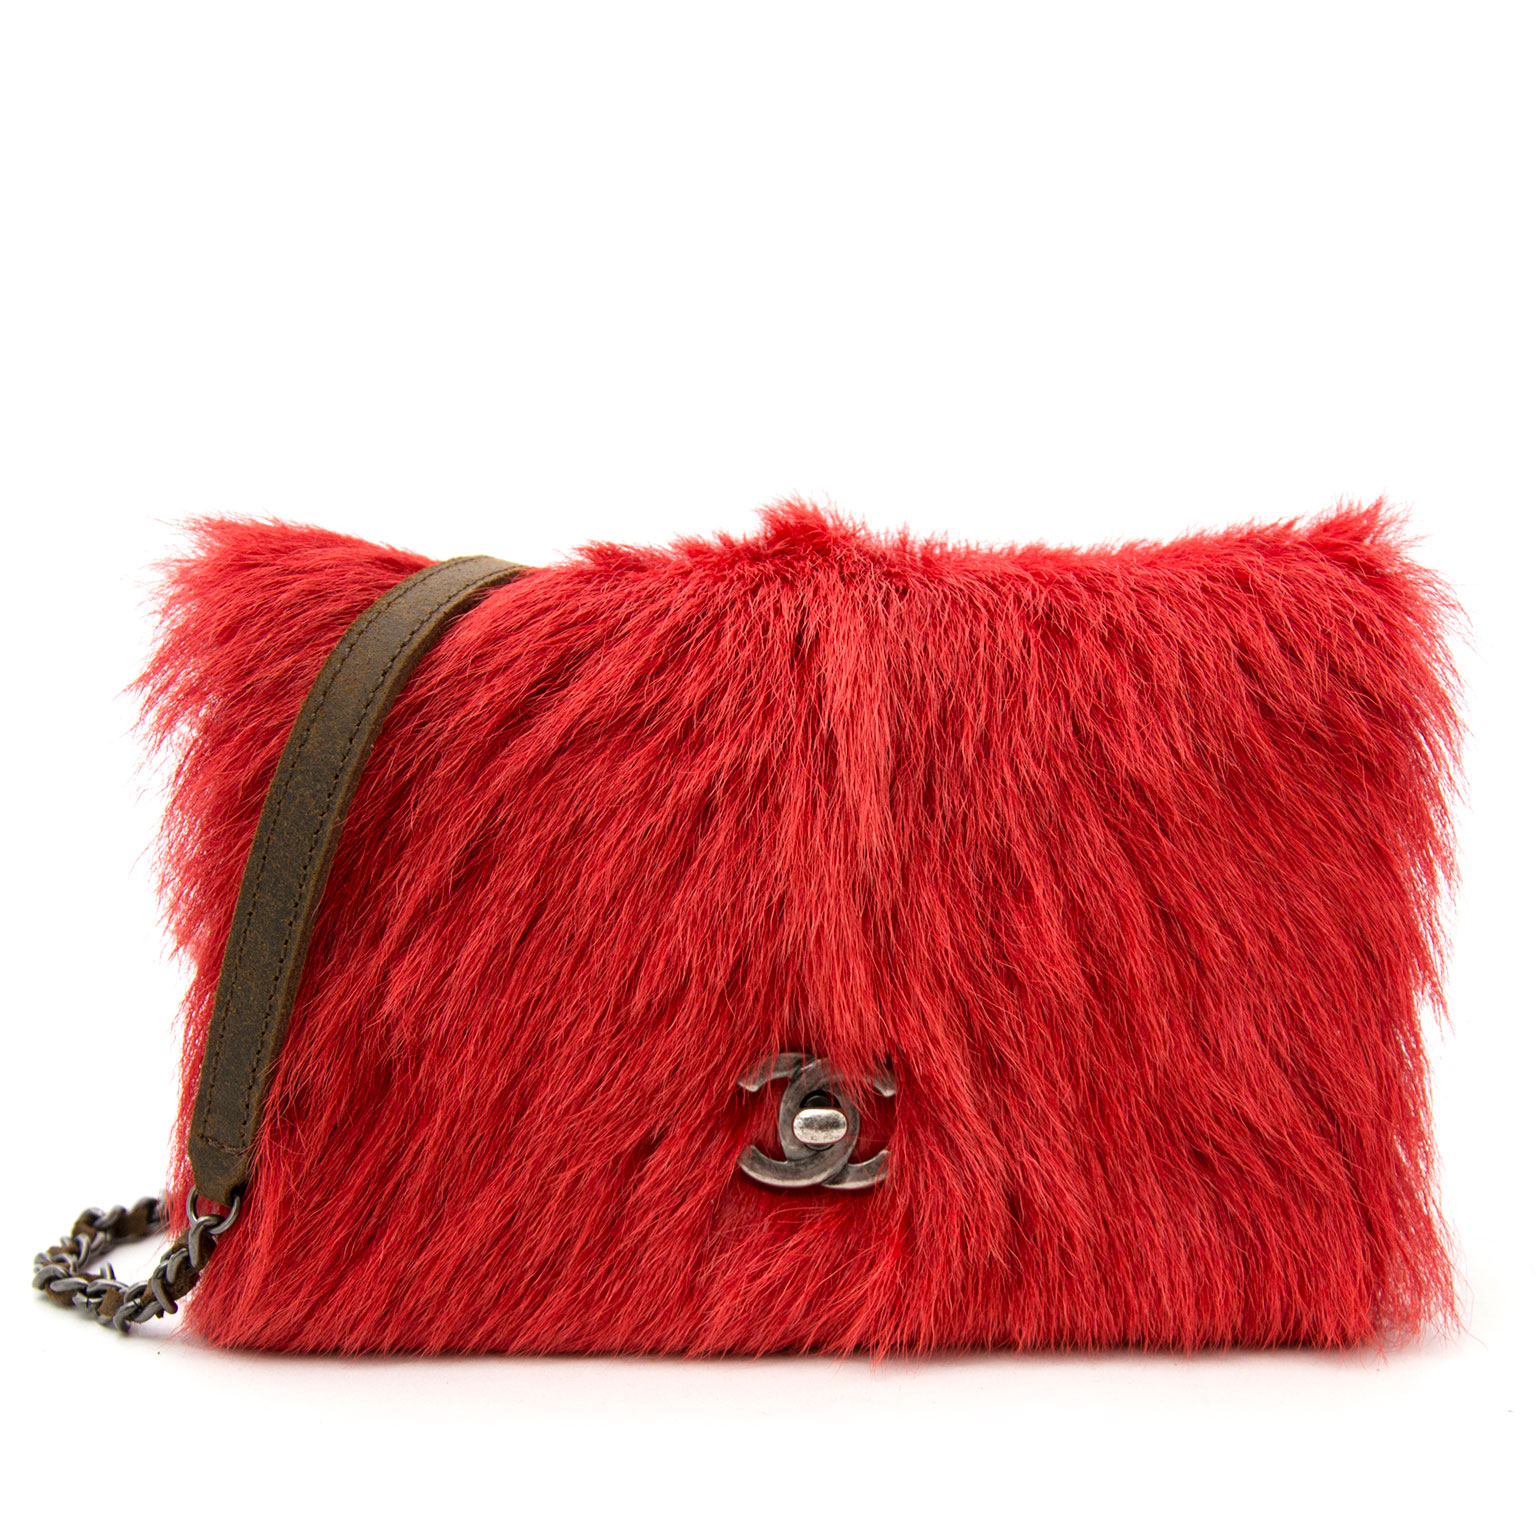 Fox Fur Tote Bag Real Fur Bags Women Red Furry Purse Shoulder Bag - Etsy